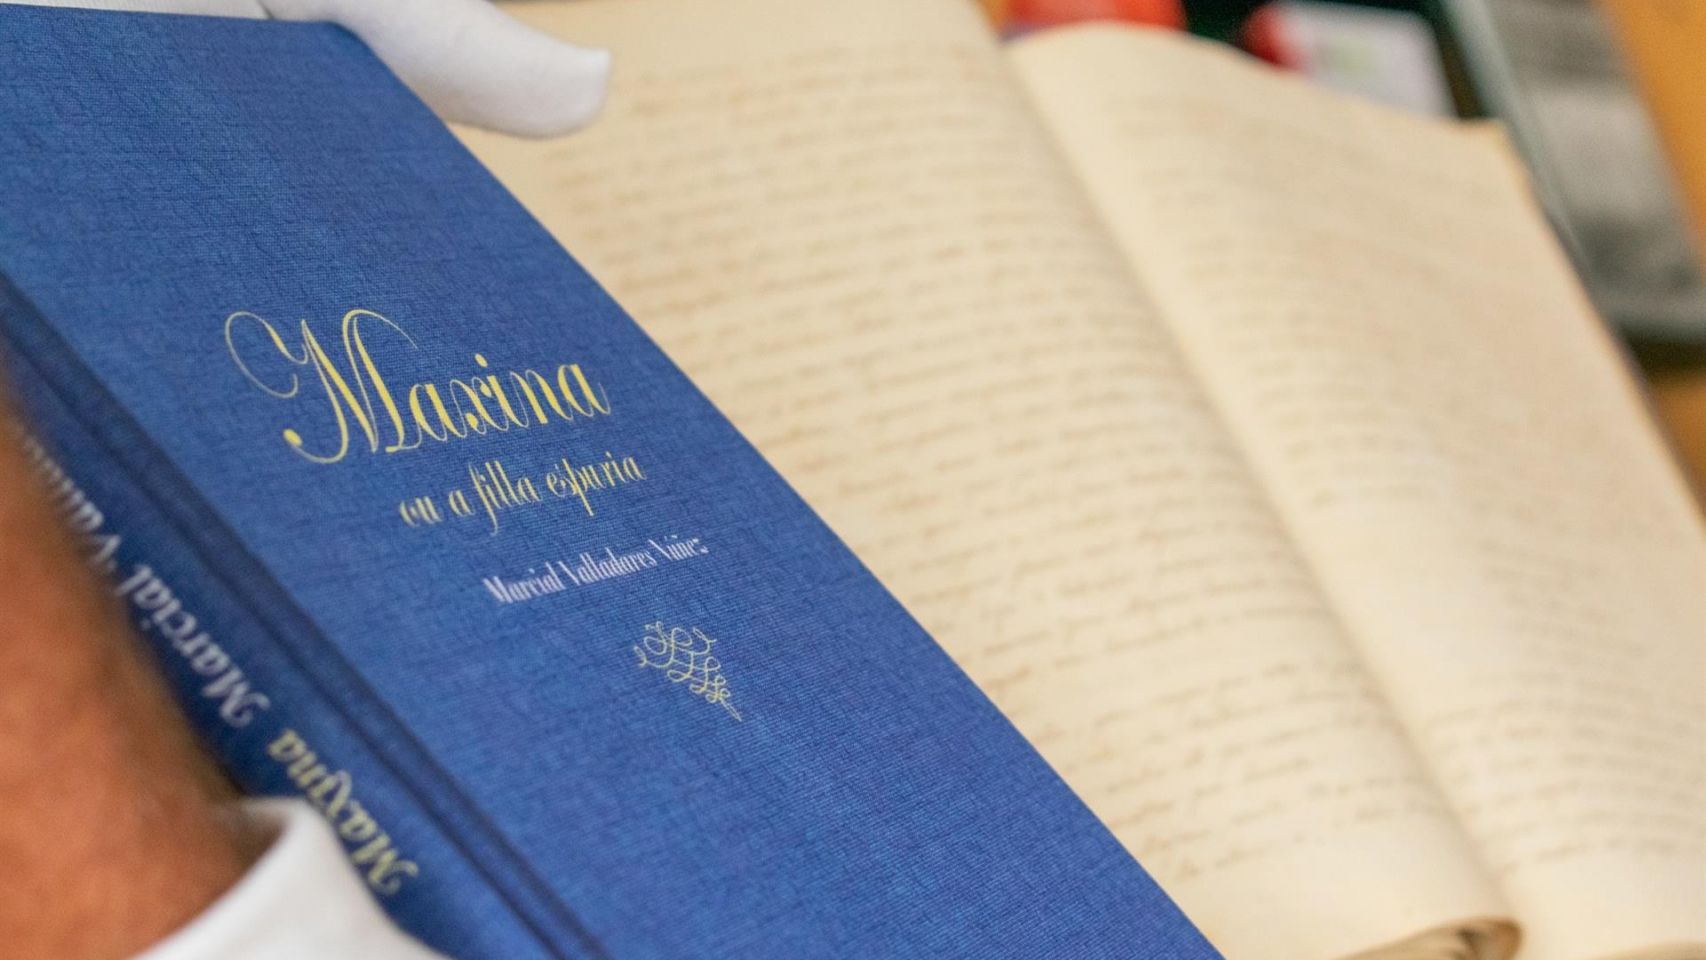 La primera novela en gallego vuelve a las librerías en una edición que reproduce el manuscrito de Marcial Valladares